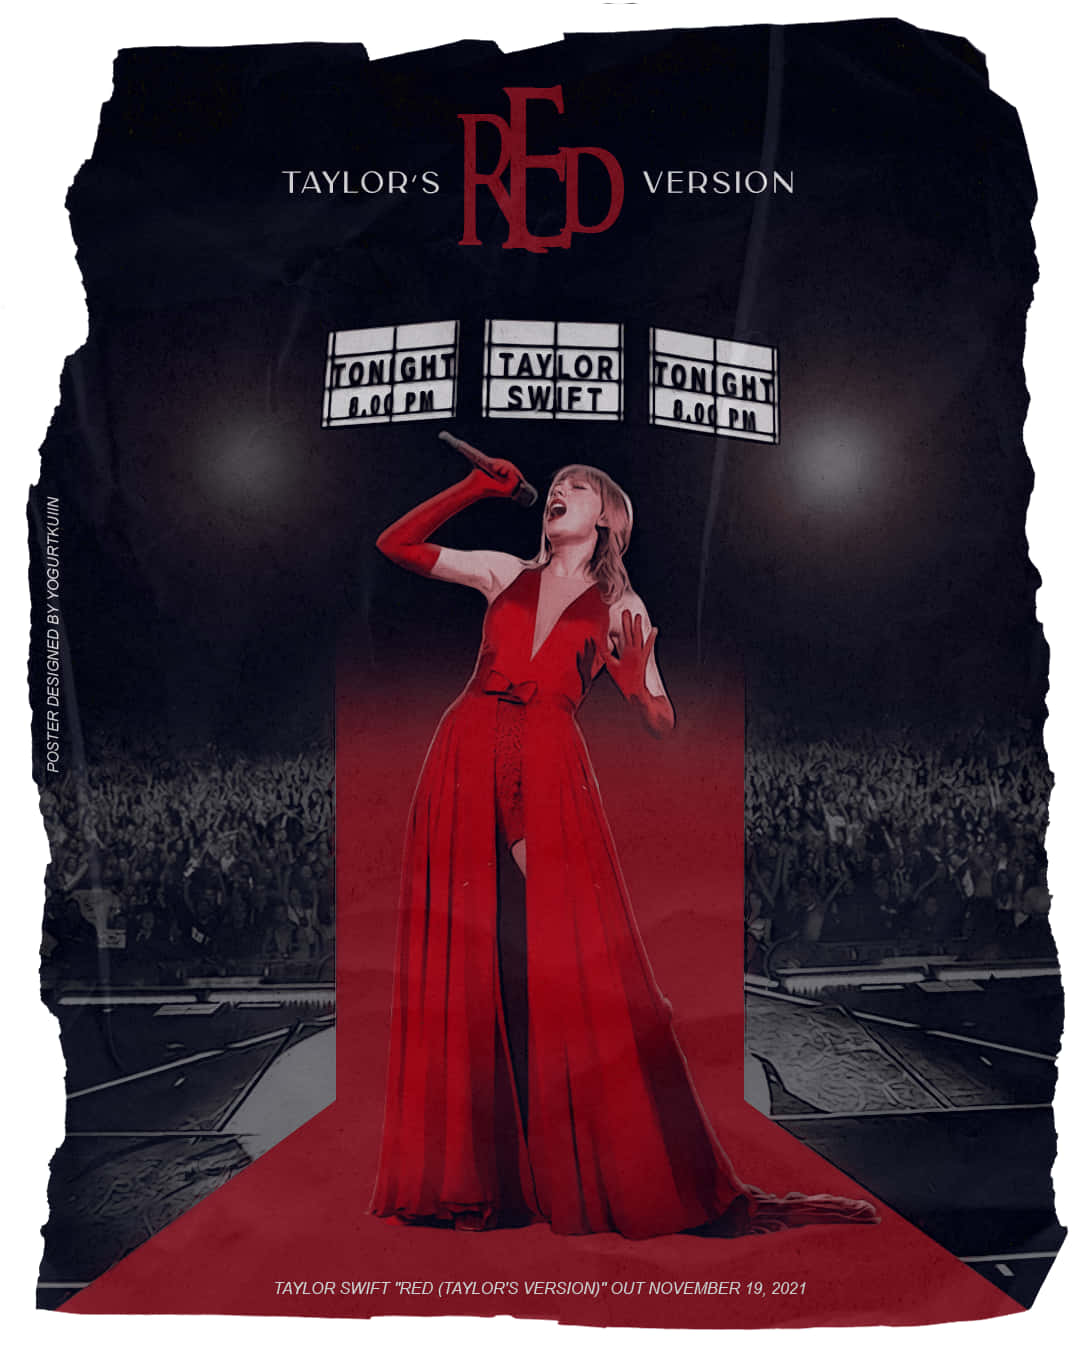 Rød Taylors Version Performance Plakat bemærkelsesværdig blomst Wallpaper